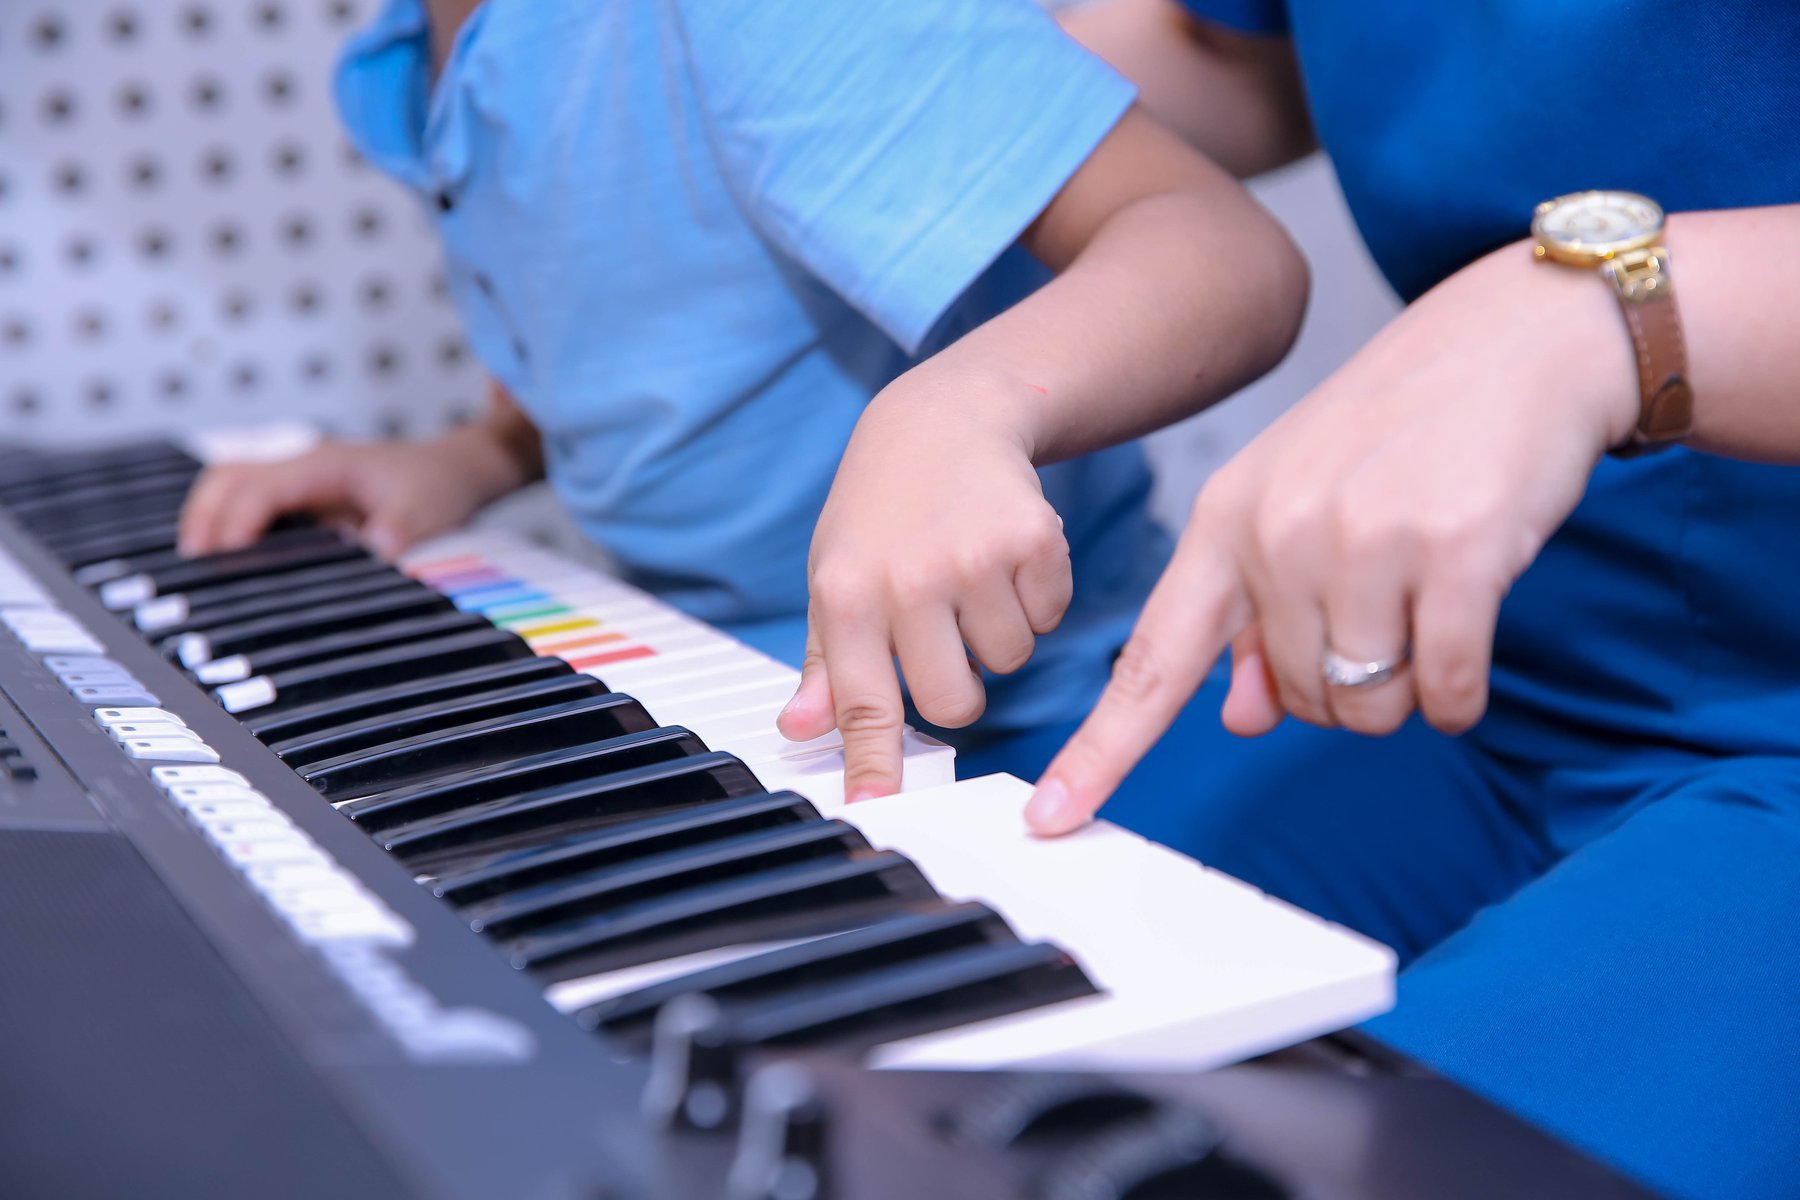 âm nhạc trị liệu cho trẻ tự kỷ